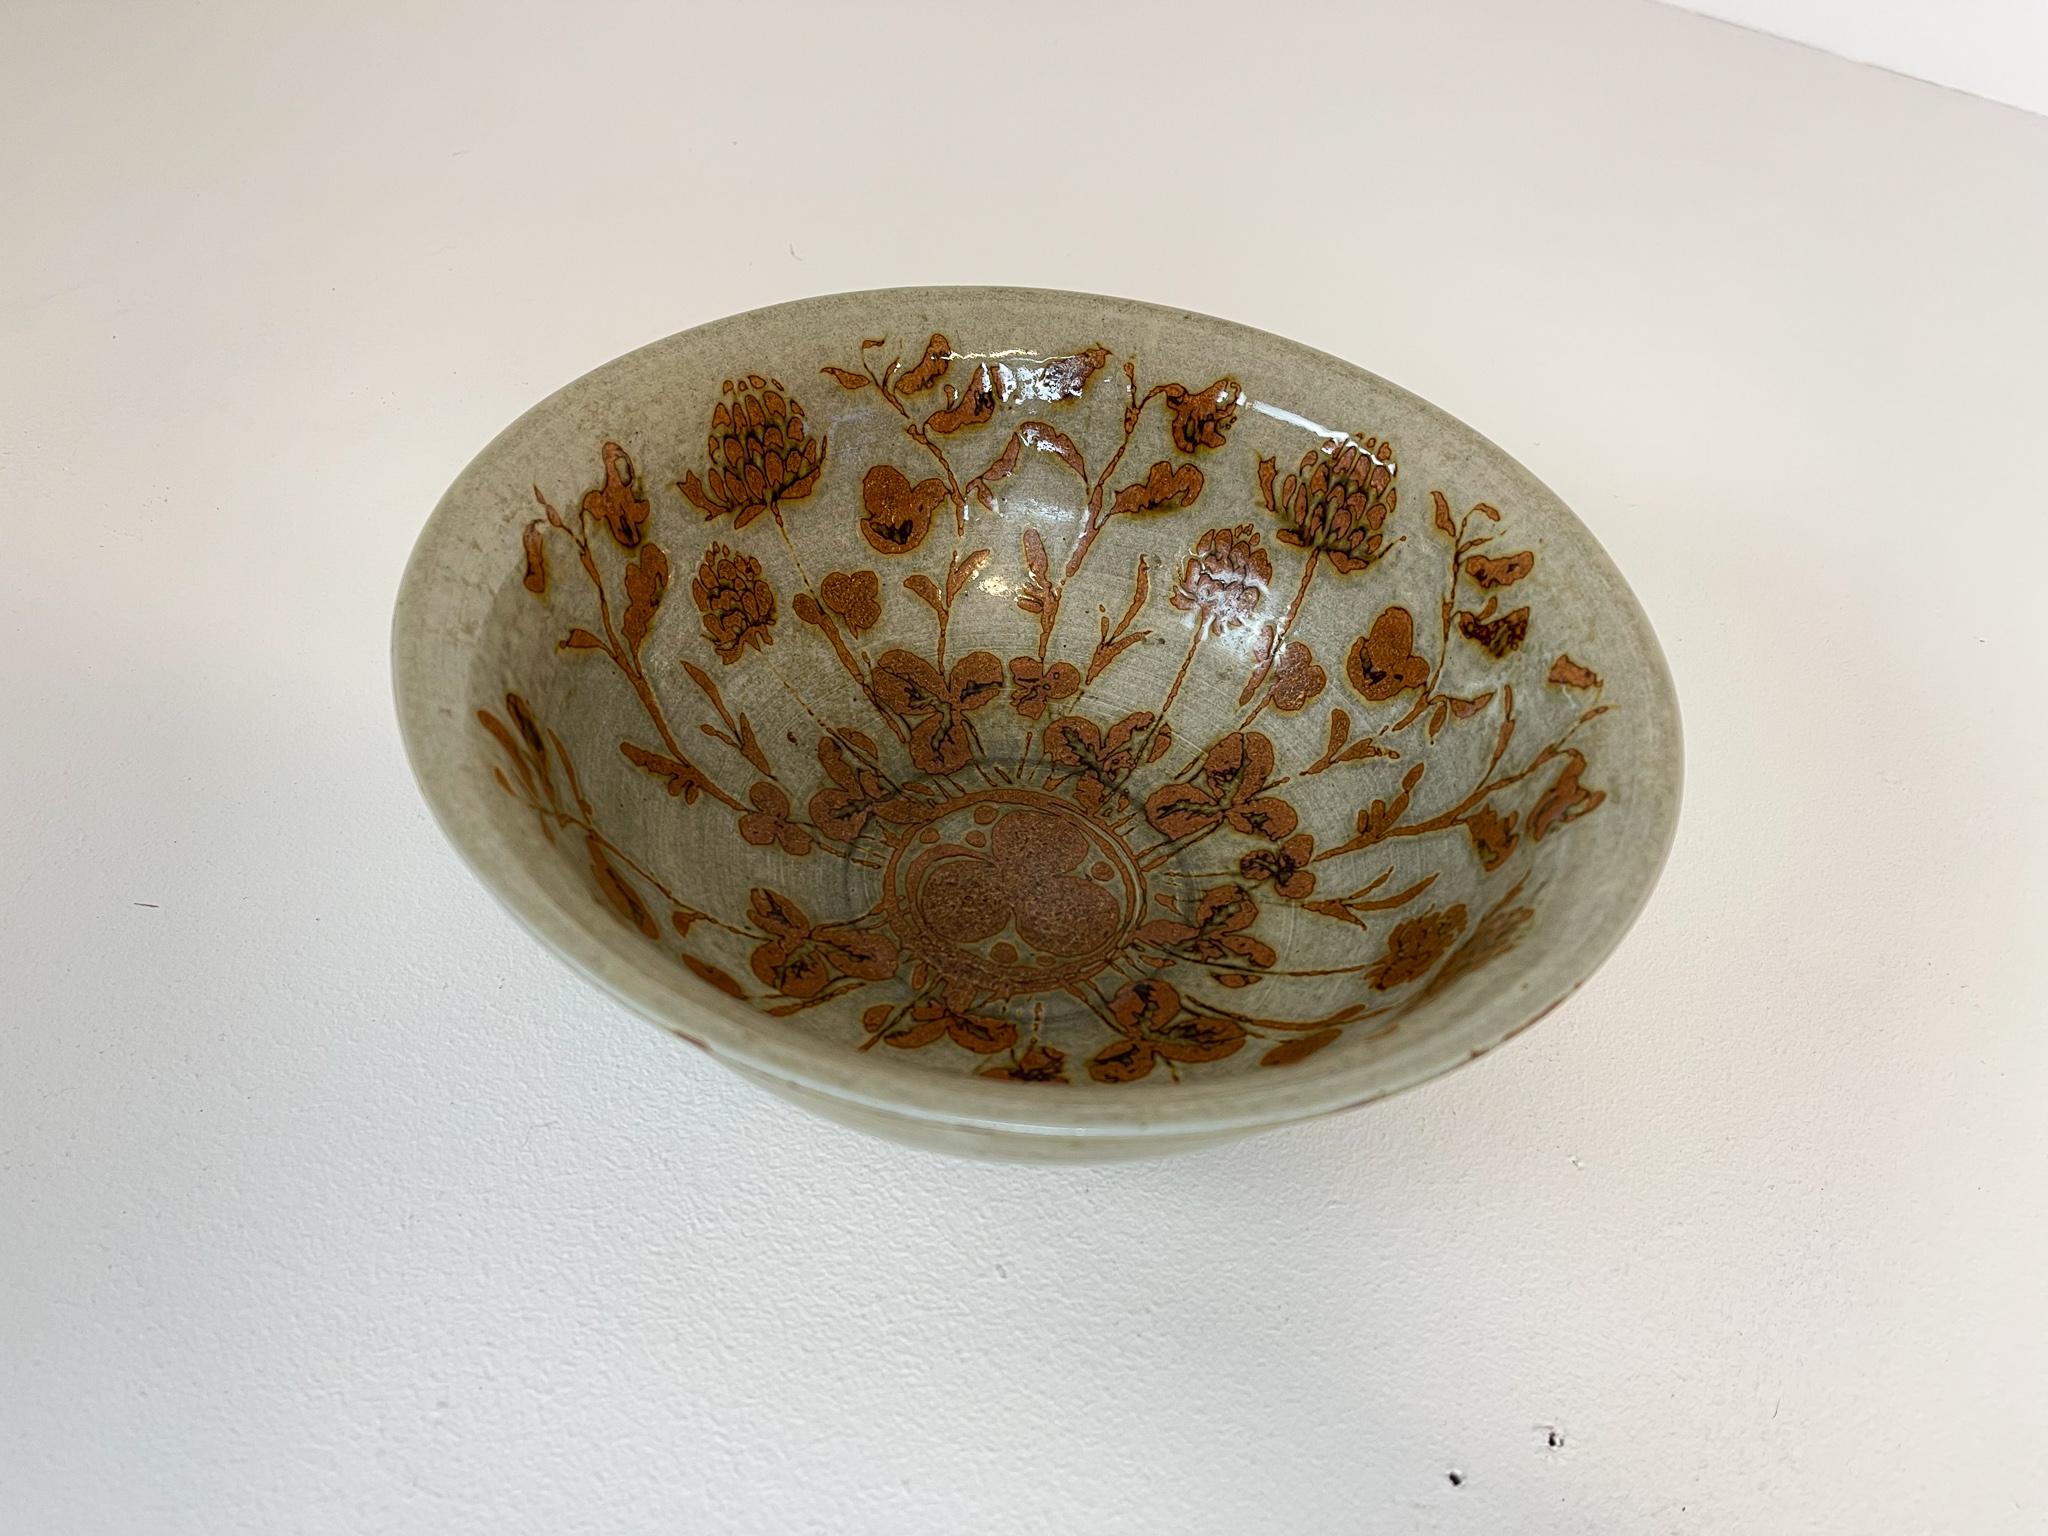 Scandinavian Modern Ceramic Bowls by Carl-Harry Stålhane Design Huset, Sweden For Sale 2